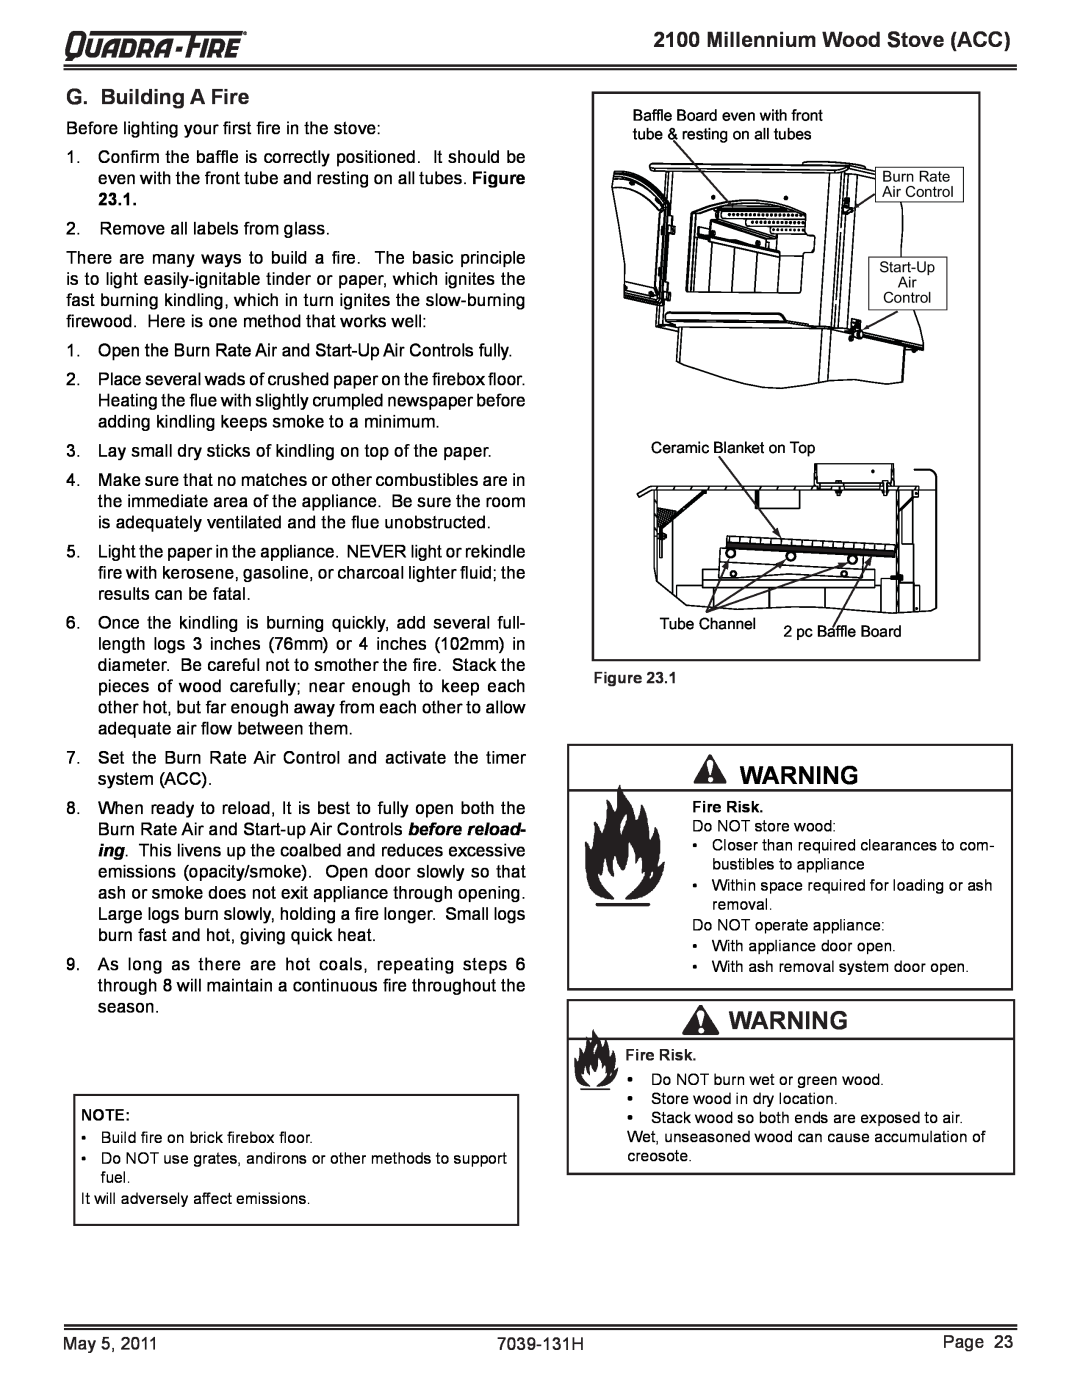 Quadra-Fire 21M-ACC owner manual Millennium Wood Stove ACC, G. Building A Fire 